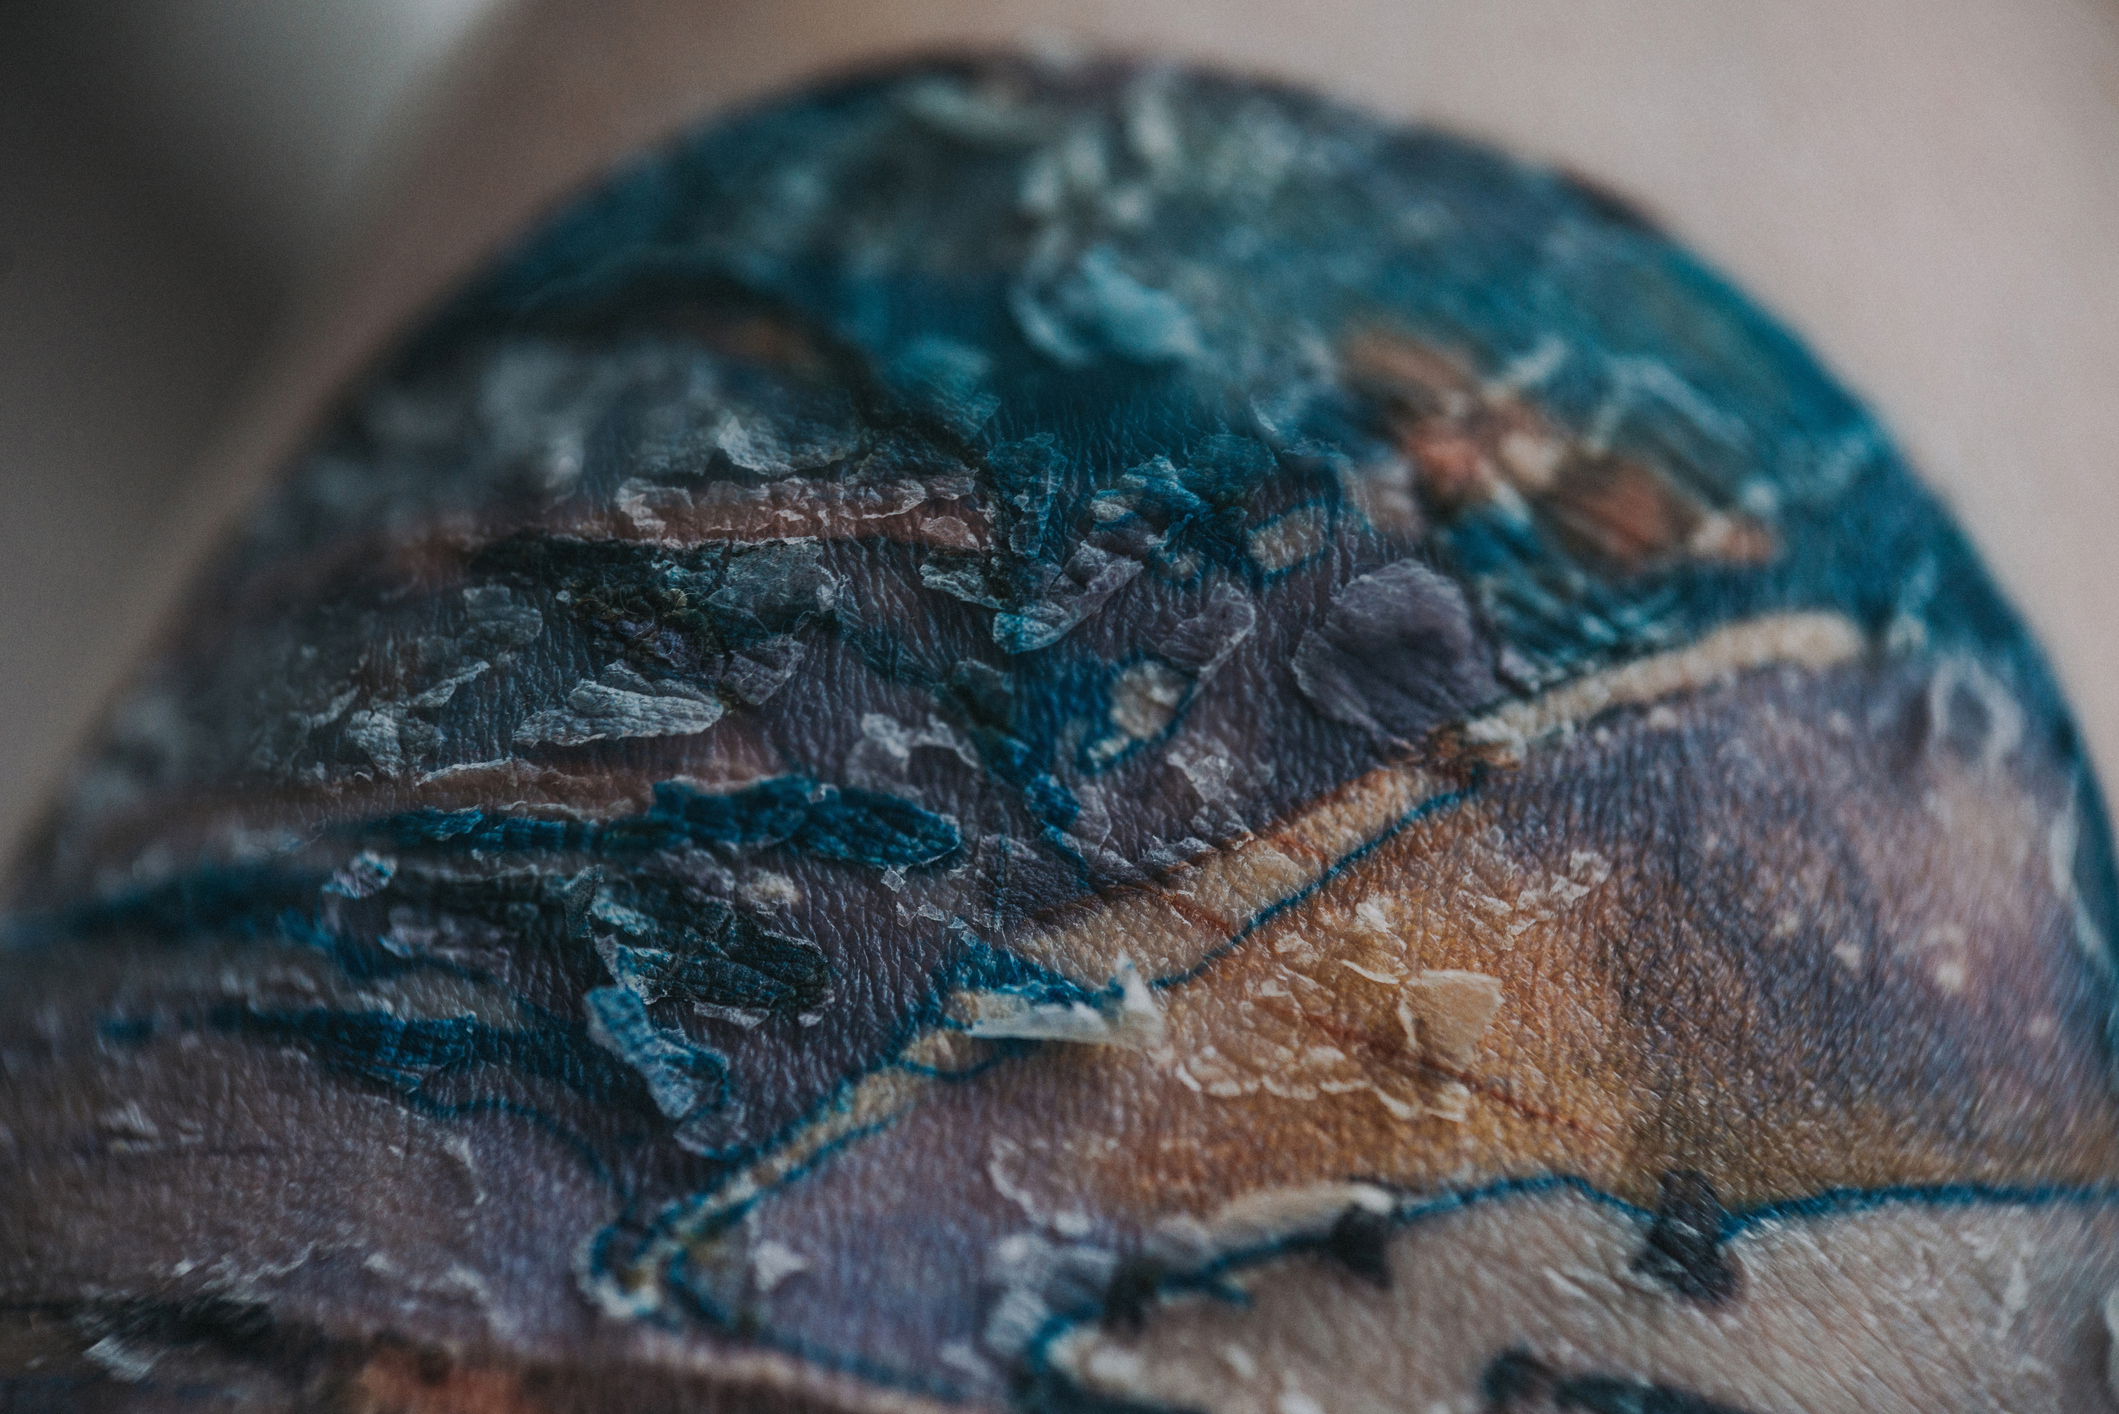 Közeli felvétel gyógyuló tetoválásról.